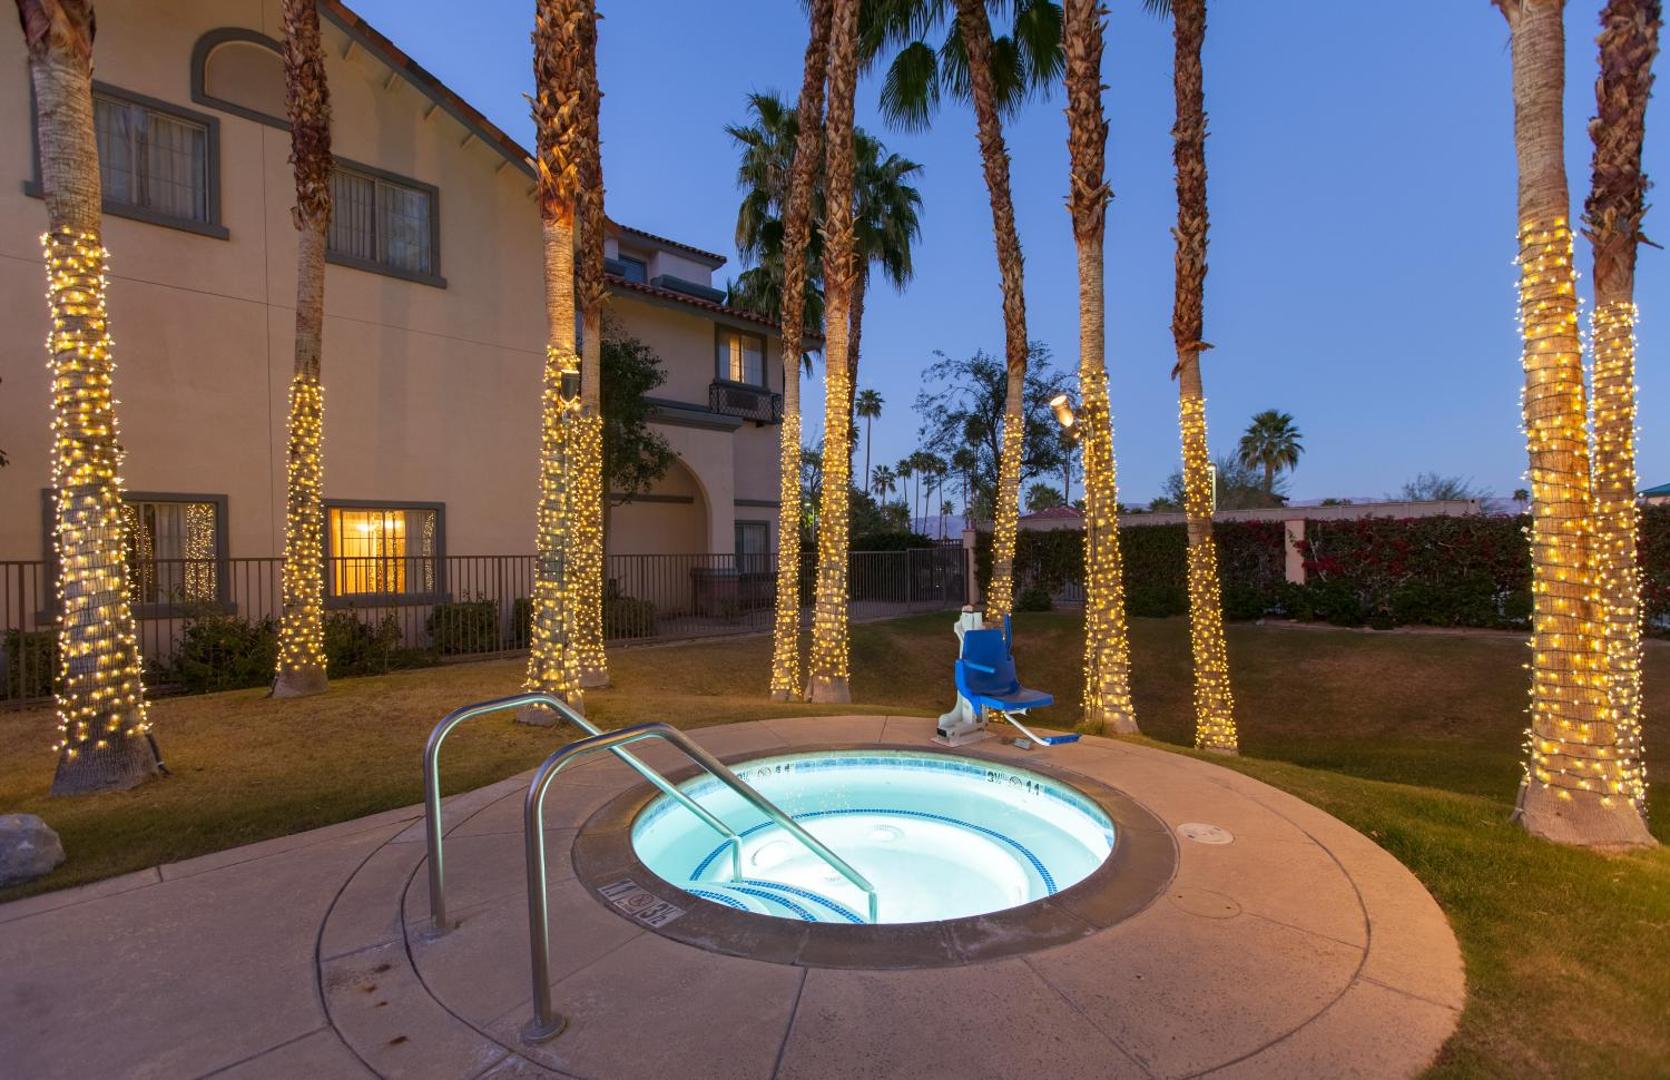 Hilton Garden Inn Palm Springs/Rancho Mirage